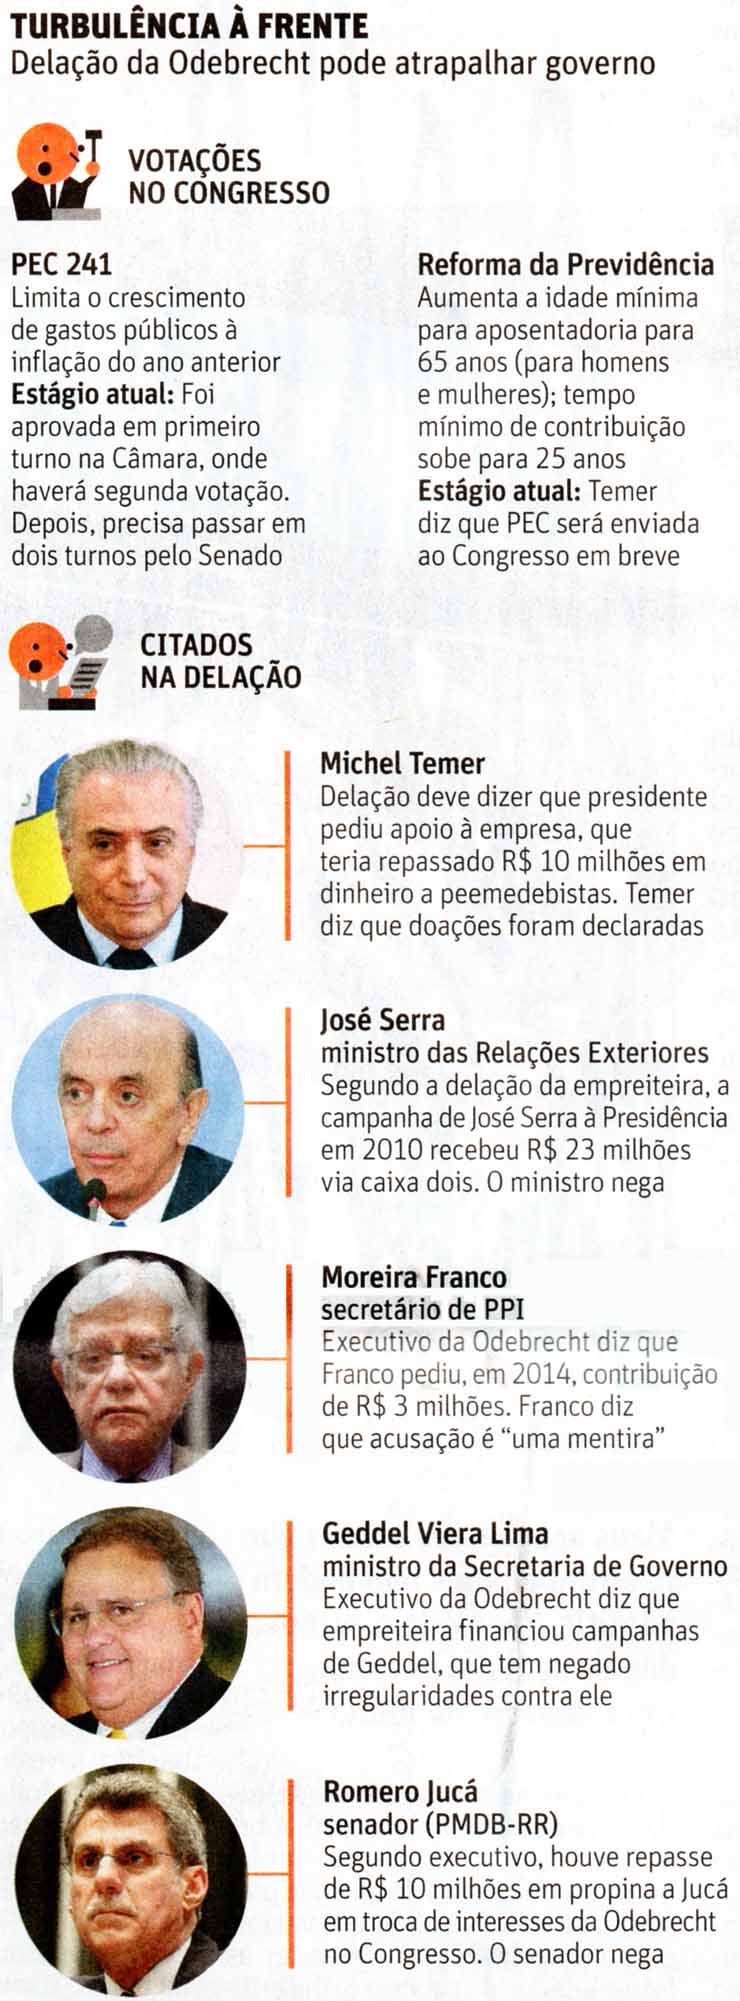 Governo: Turbulncia a frente - Folha / 18.10.2016